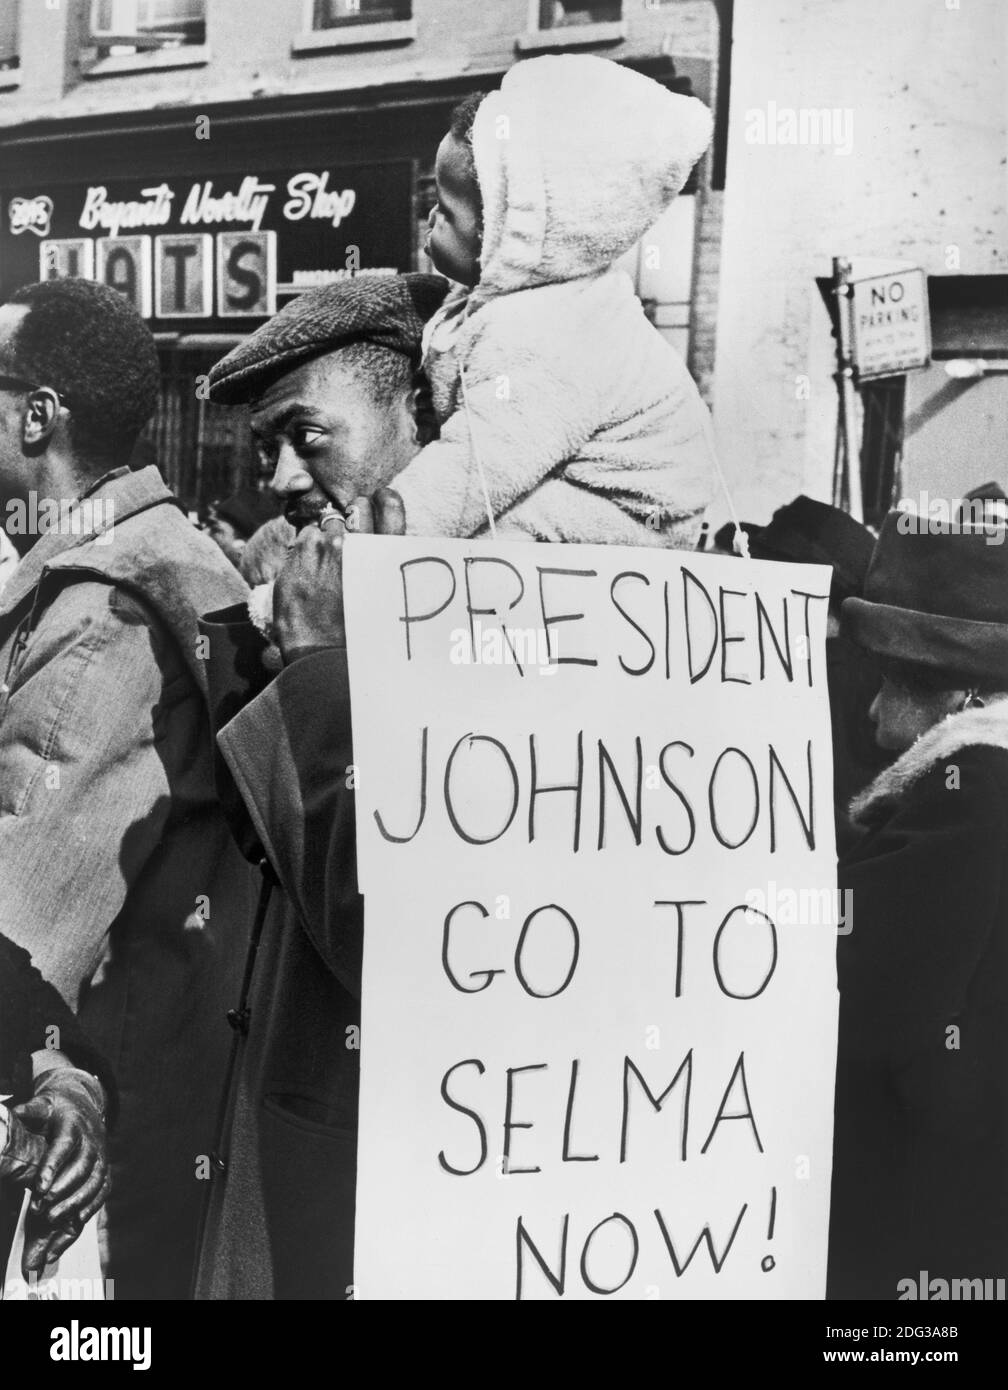 Manifestant avec l'enfant sur les épaules tenant des signes protestant contre le racisme à Selma, Alabama, Harlem, New York, Etats-Unis, photo de Stanley Wolfson, New York World-Telegram et The Sun Newspaper Photograph Collection, 15 mars 1965 Banque D'Images